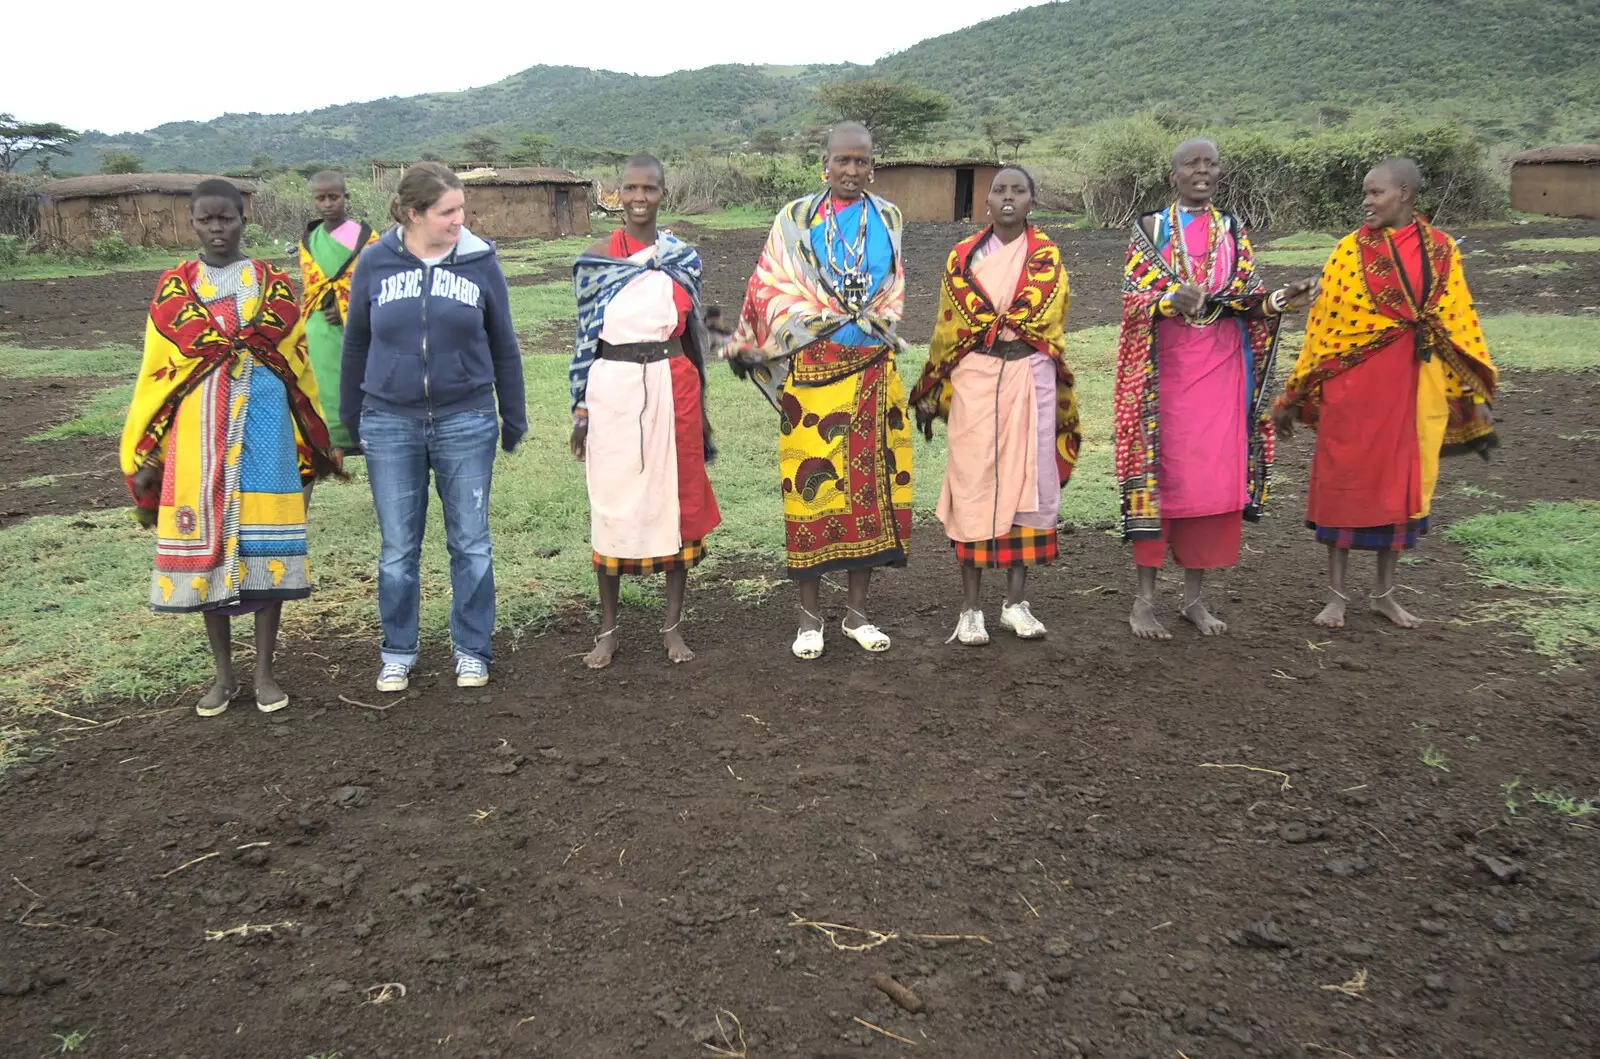 Isobel is invited to join in, from Maasai Mara Safari and a Maasai Village, Ololaimutia, Kenya - 5th November 2010